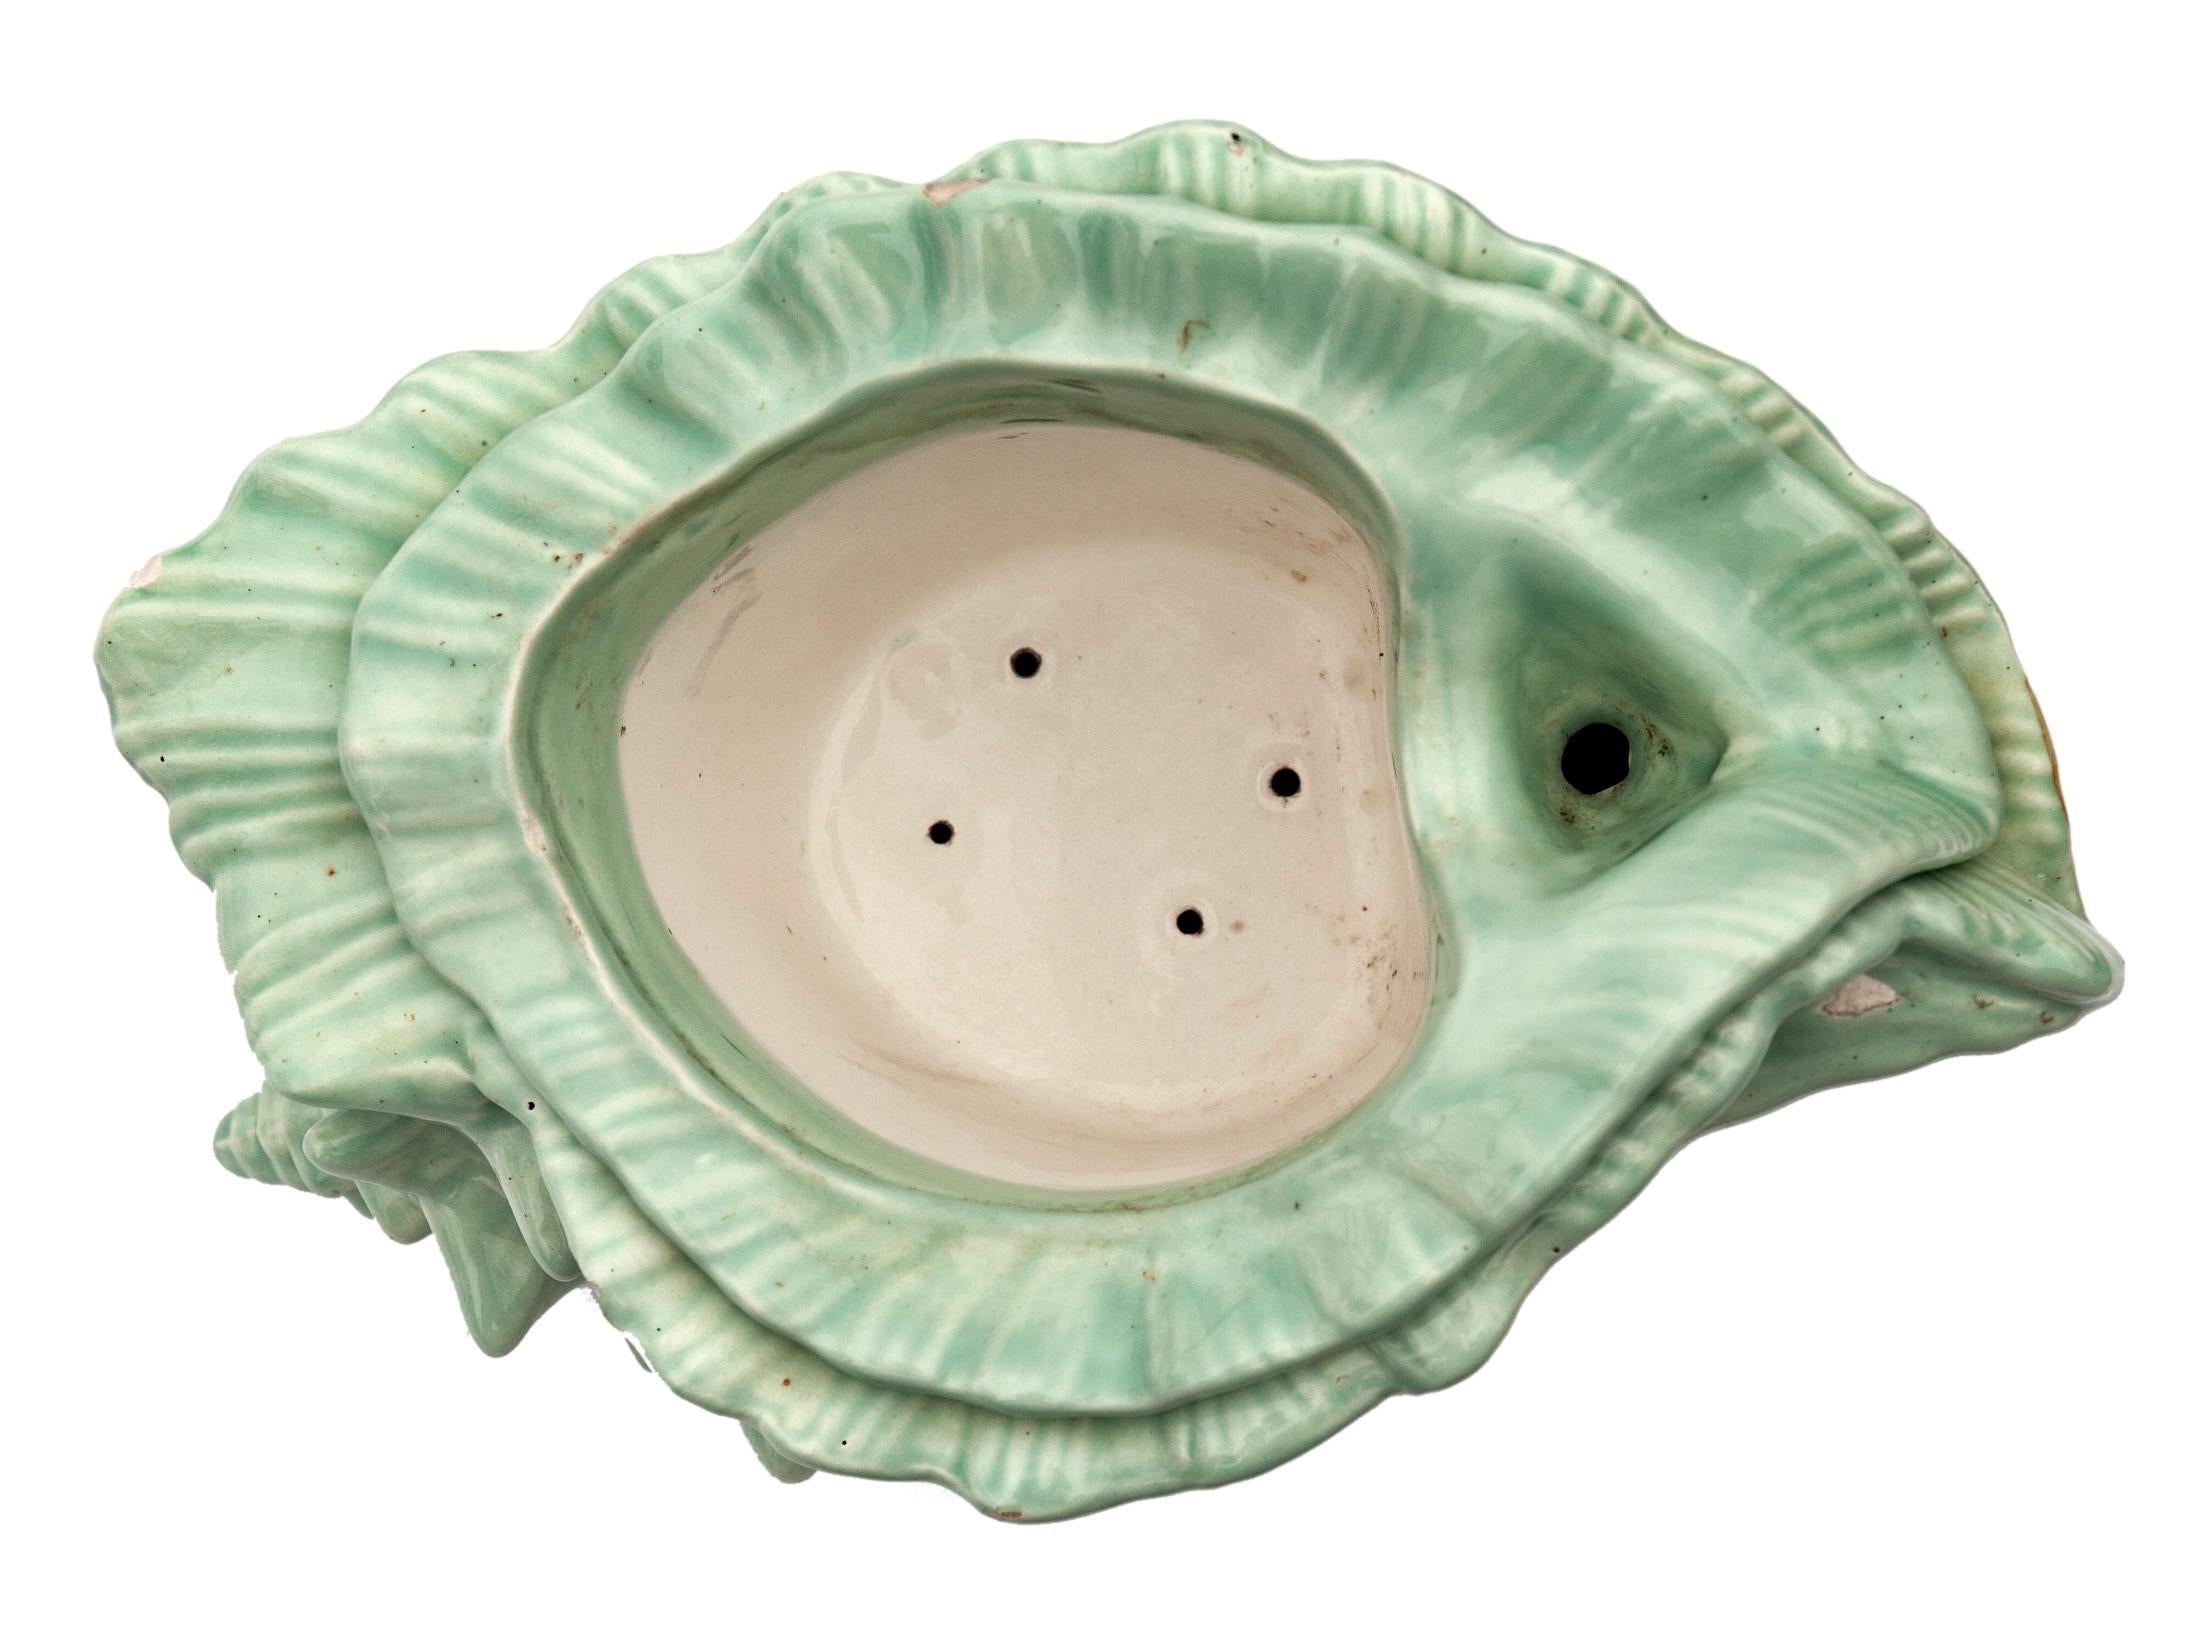 Pflanzgefäß aus glasierter Keramik mit Muschelschale und selbstentleerendem Innentopf.
Pflanzgefäß mit gedämpfter grüner Oberfläche in Elfenbein.
Kleine vernachlässigbare Chips.